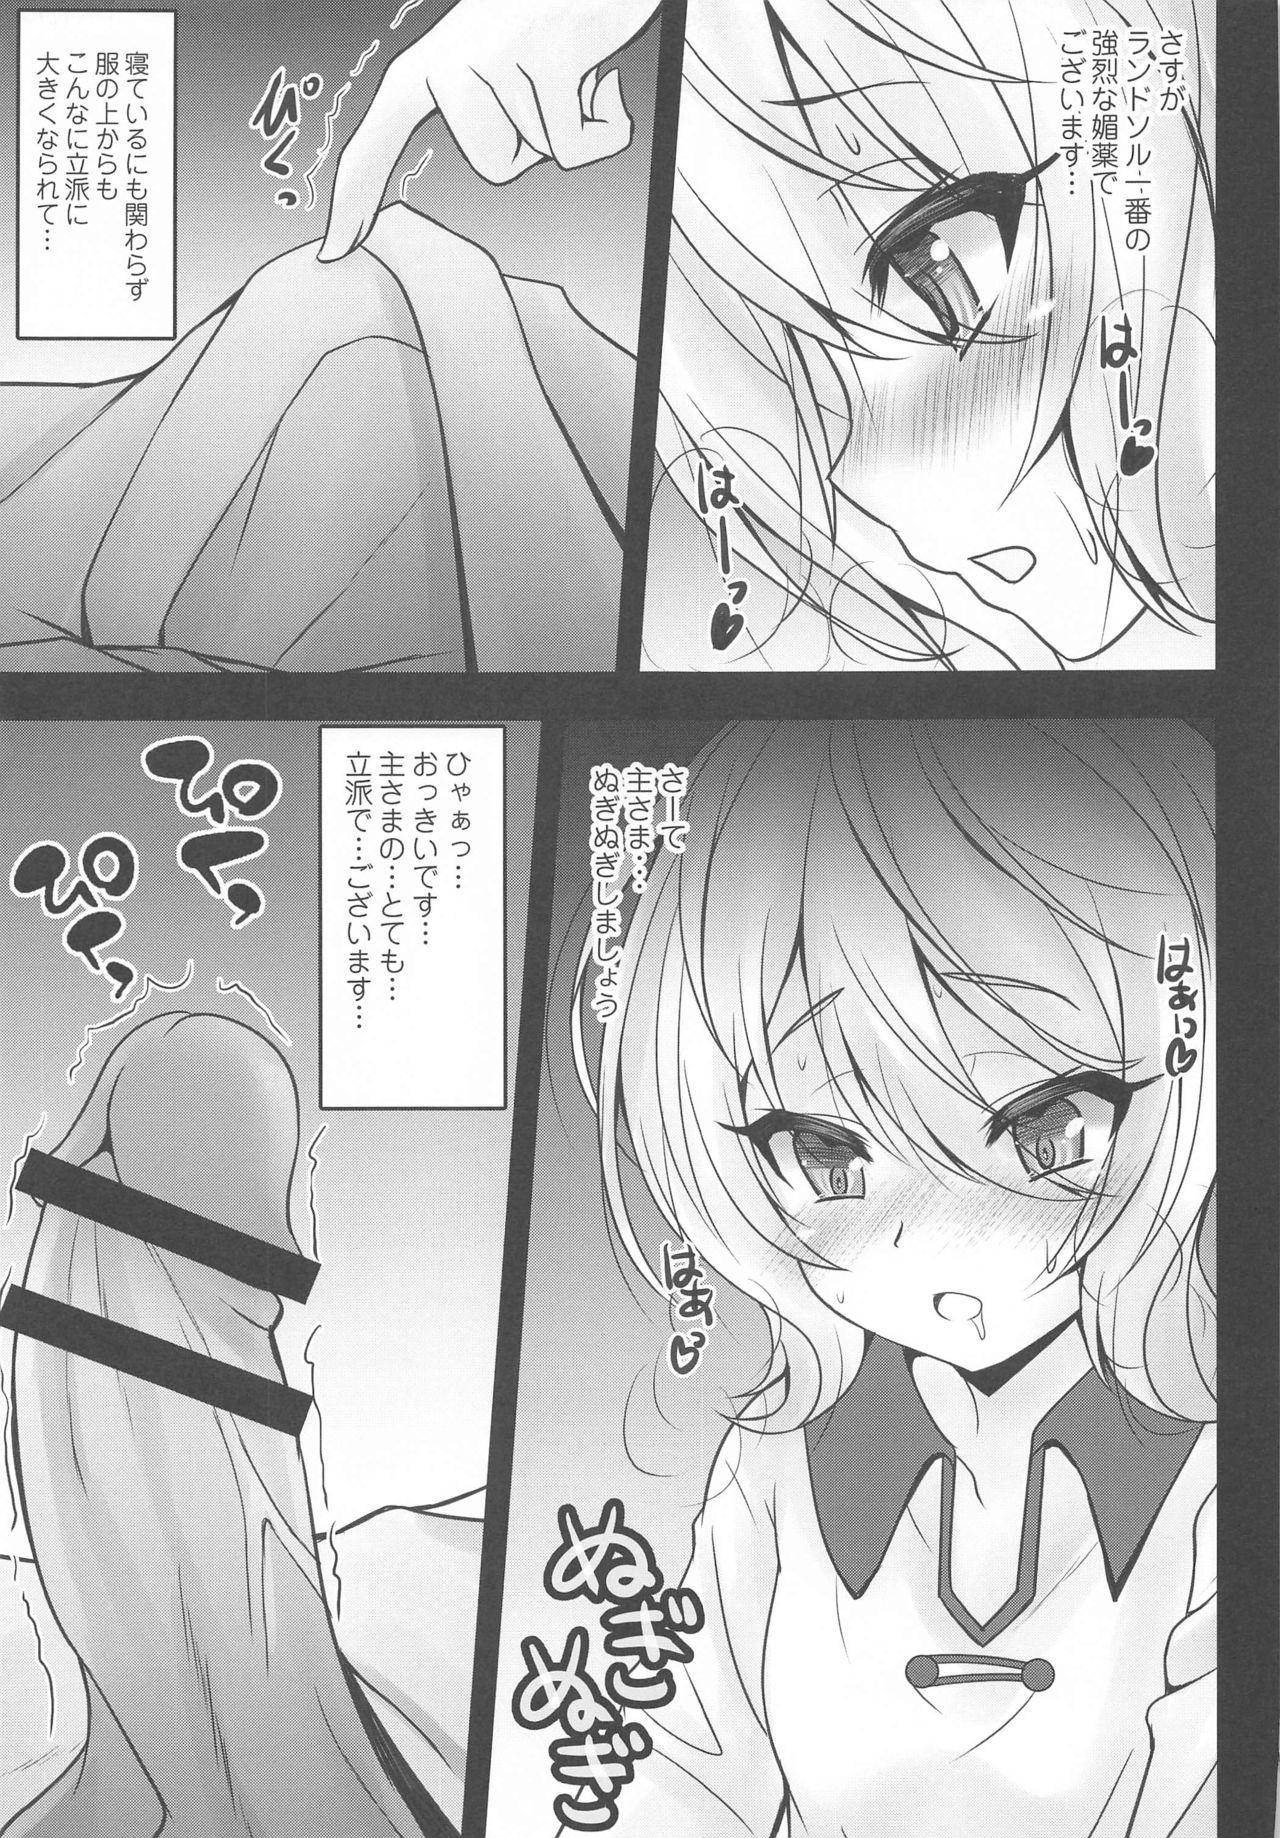 Dyke Aruji-sama Kokkoro to Okusuri Ecchi Shimashou - Princess connect Lesbian - Page 6